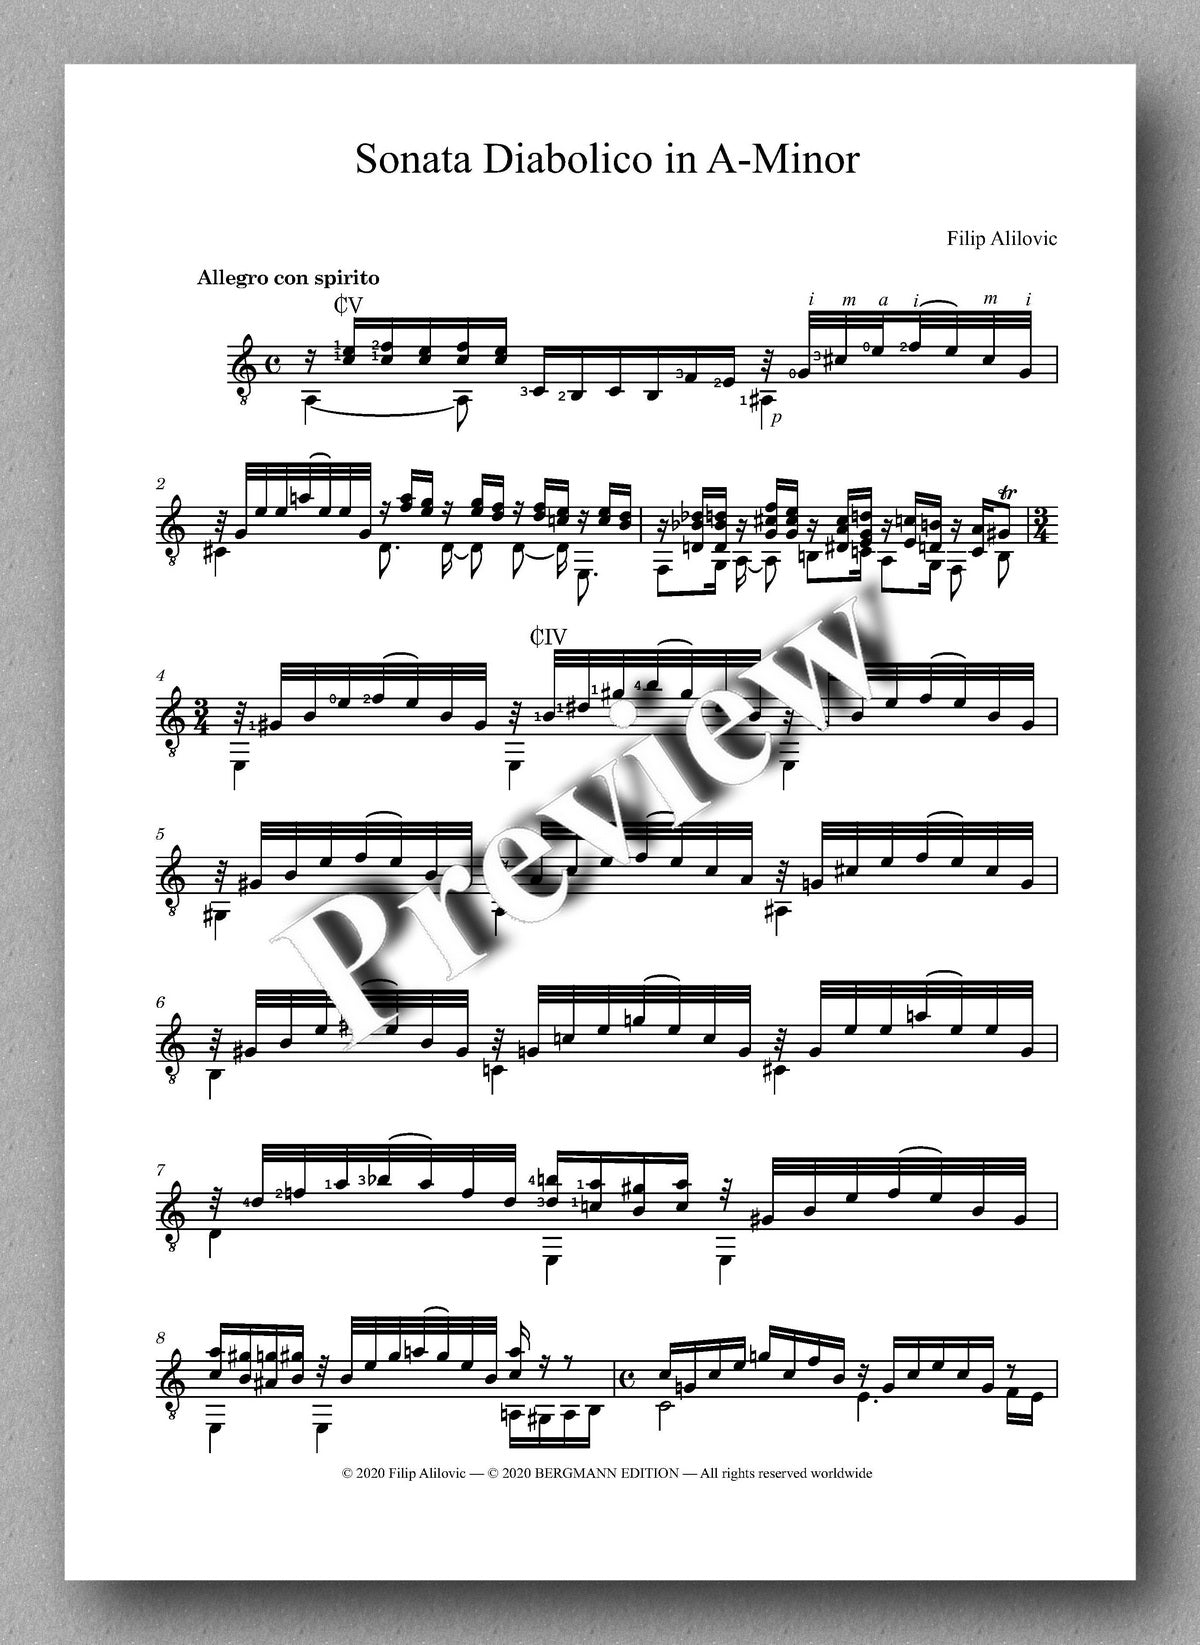 Filip Alilovic, Sonata Diabolico - music score 1